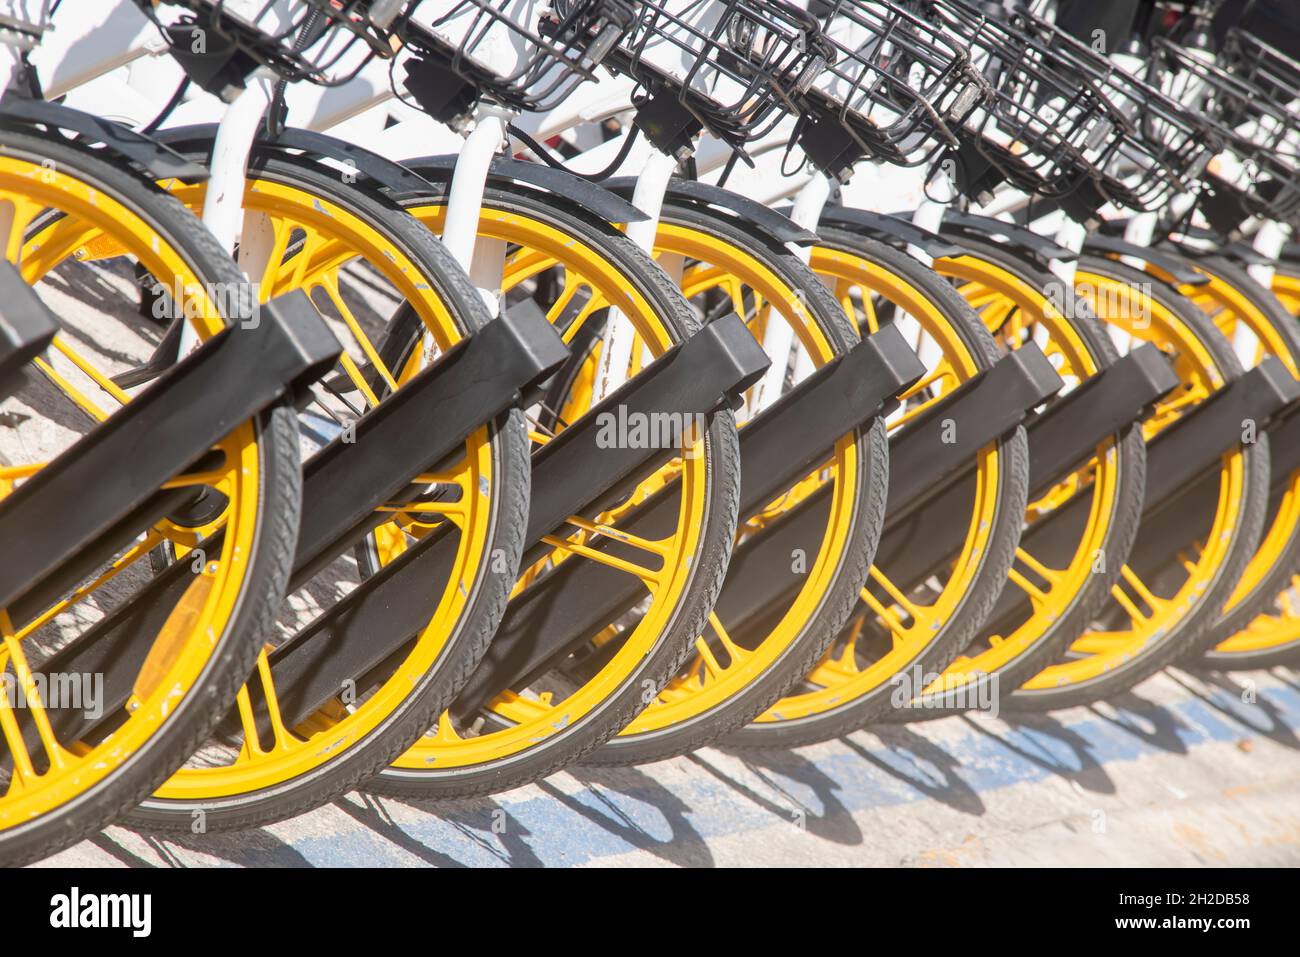 Nahaufnahme einer Reihe geparkter Fahrräder. Reihe von geparkten bunten Fahrrädern. Verleih von gelben Fahrrädern. Stockfoto